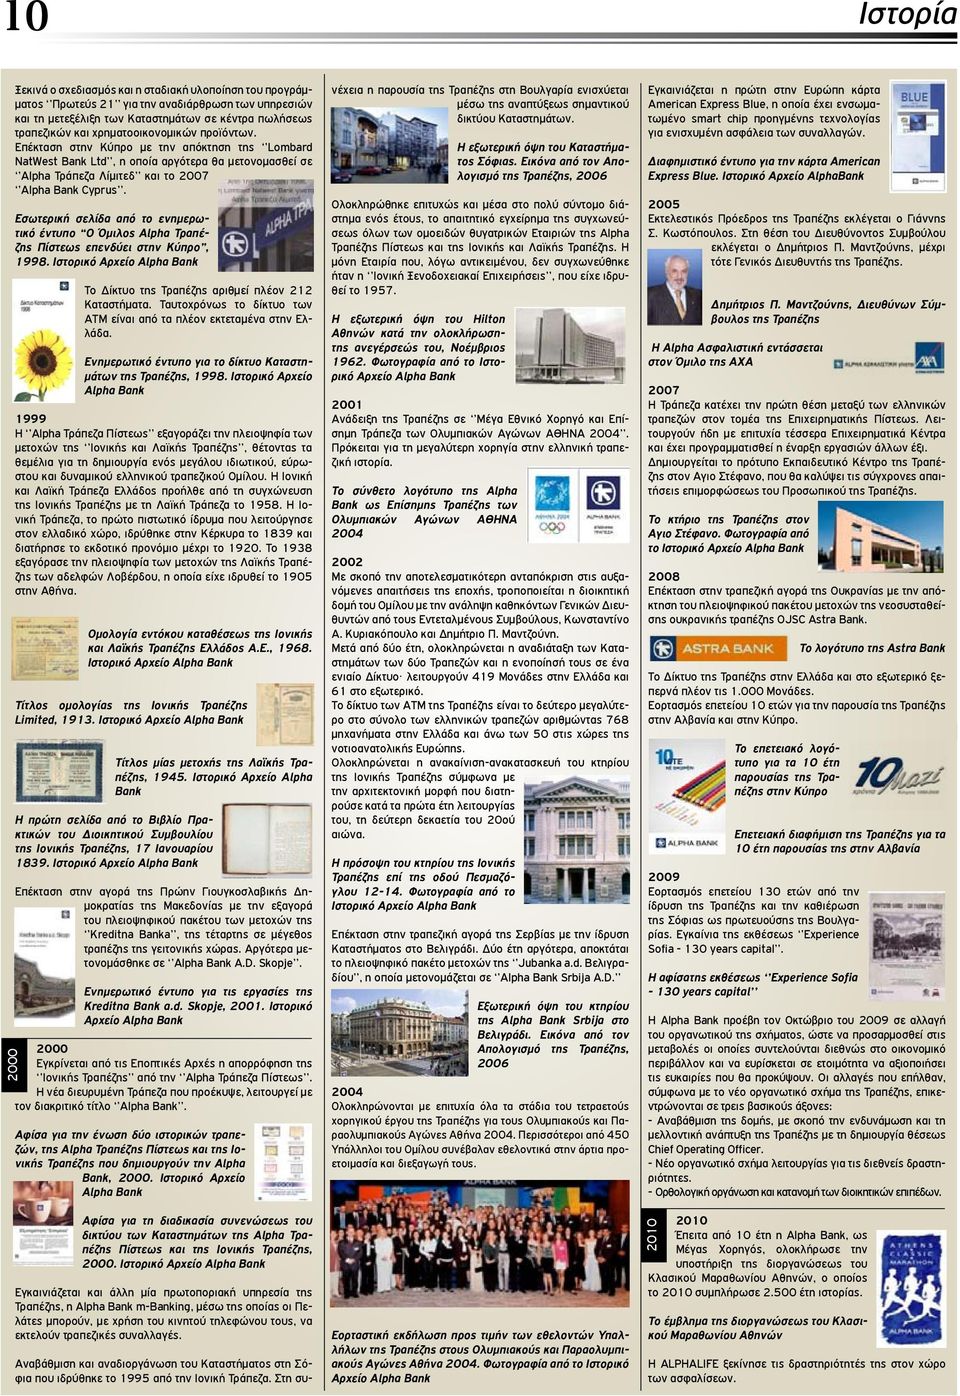 Εσωτερική σελίδα από το ενημερωτικό έντυπο Ο Όμιλος Alpha Τραπέζης Πίστεως επενδύει στην Κύπρο, 1998. Το Δίκτυο της Τραπέζης αριθμεί πλέον 212 Καταστήματα.